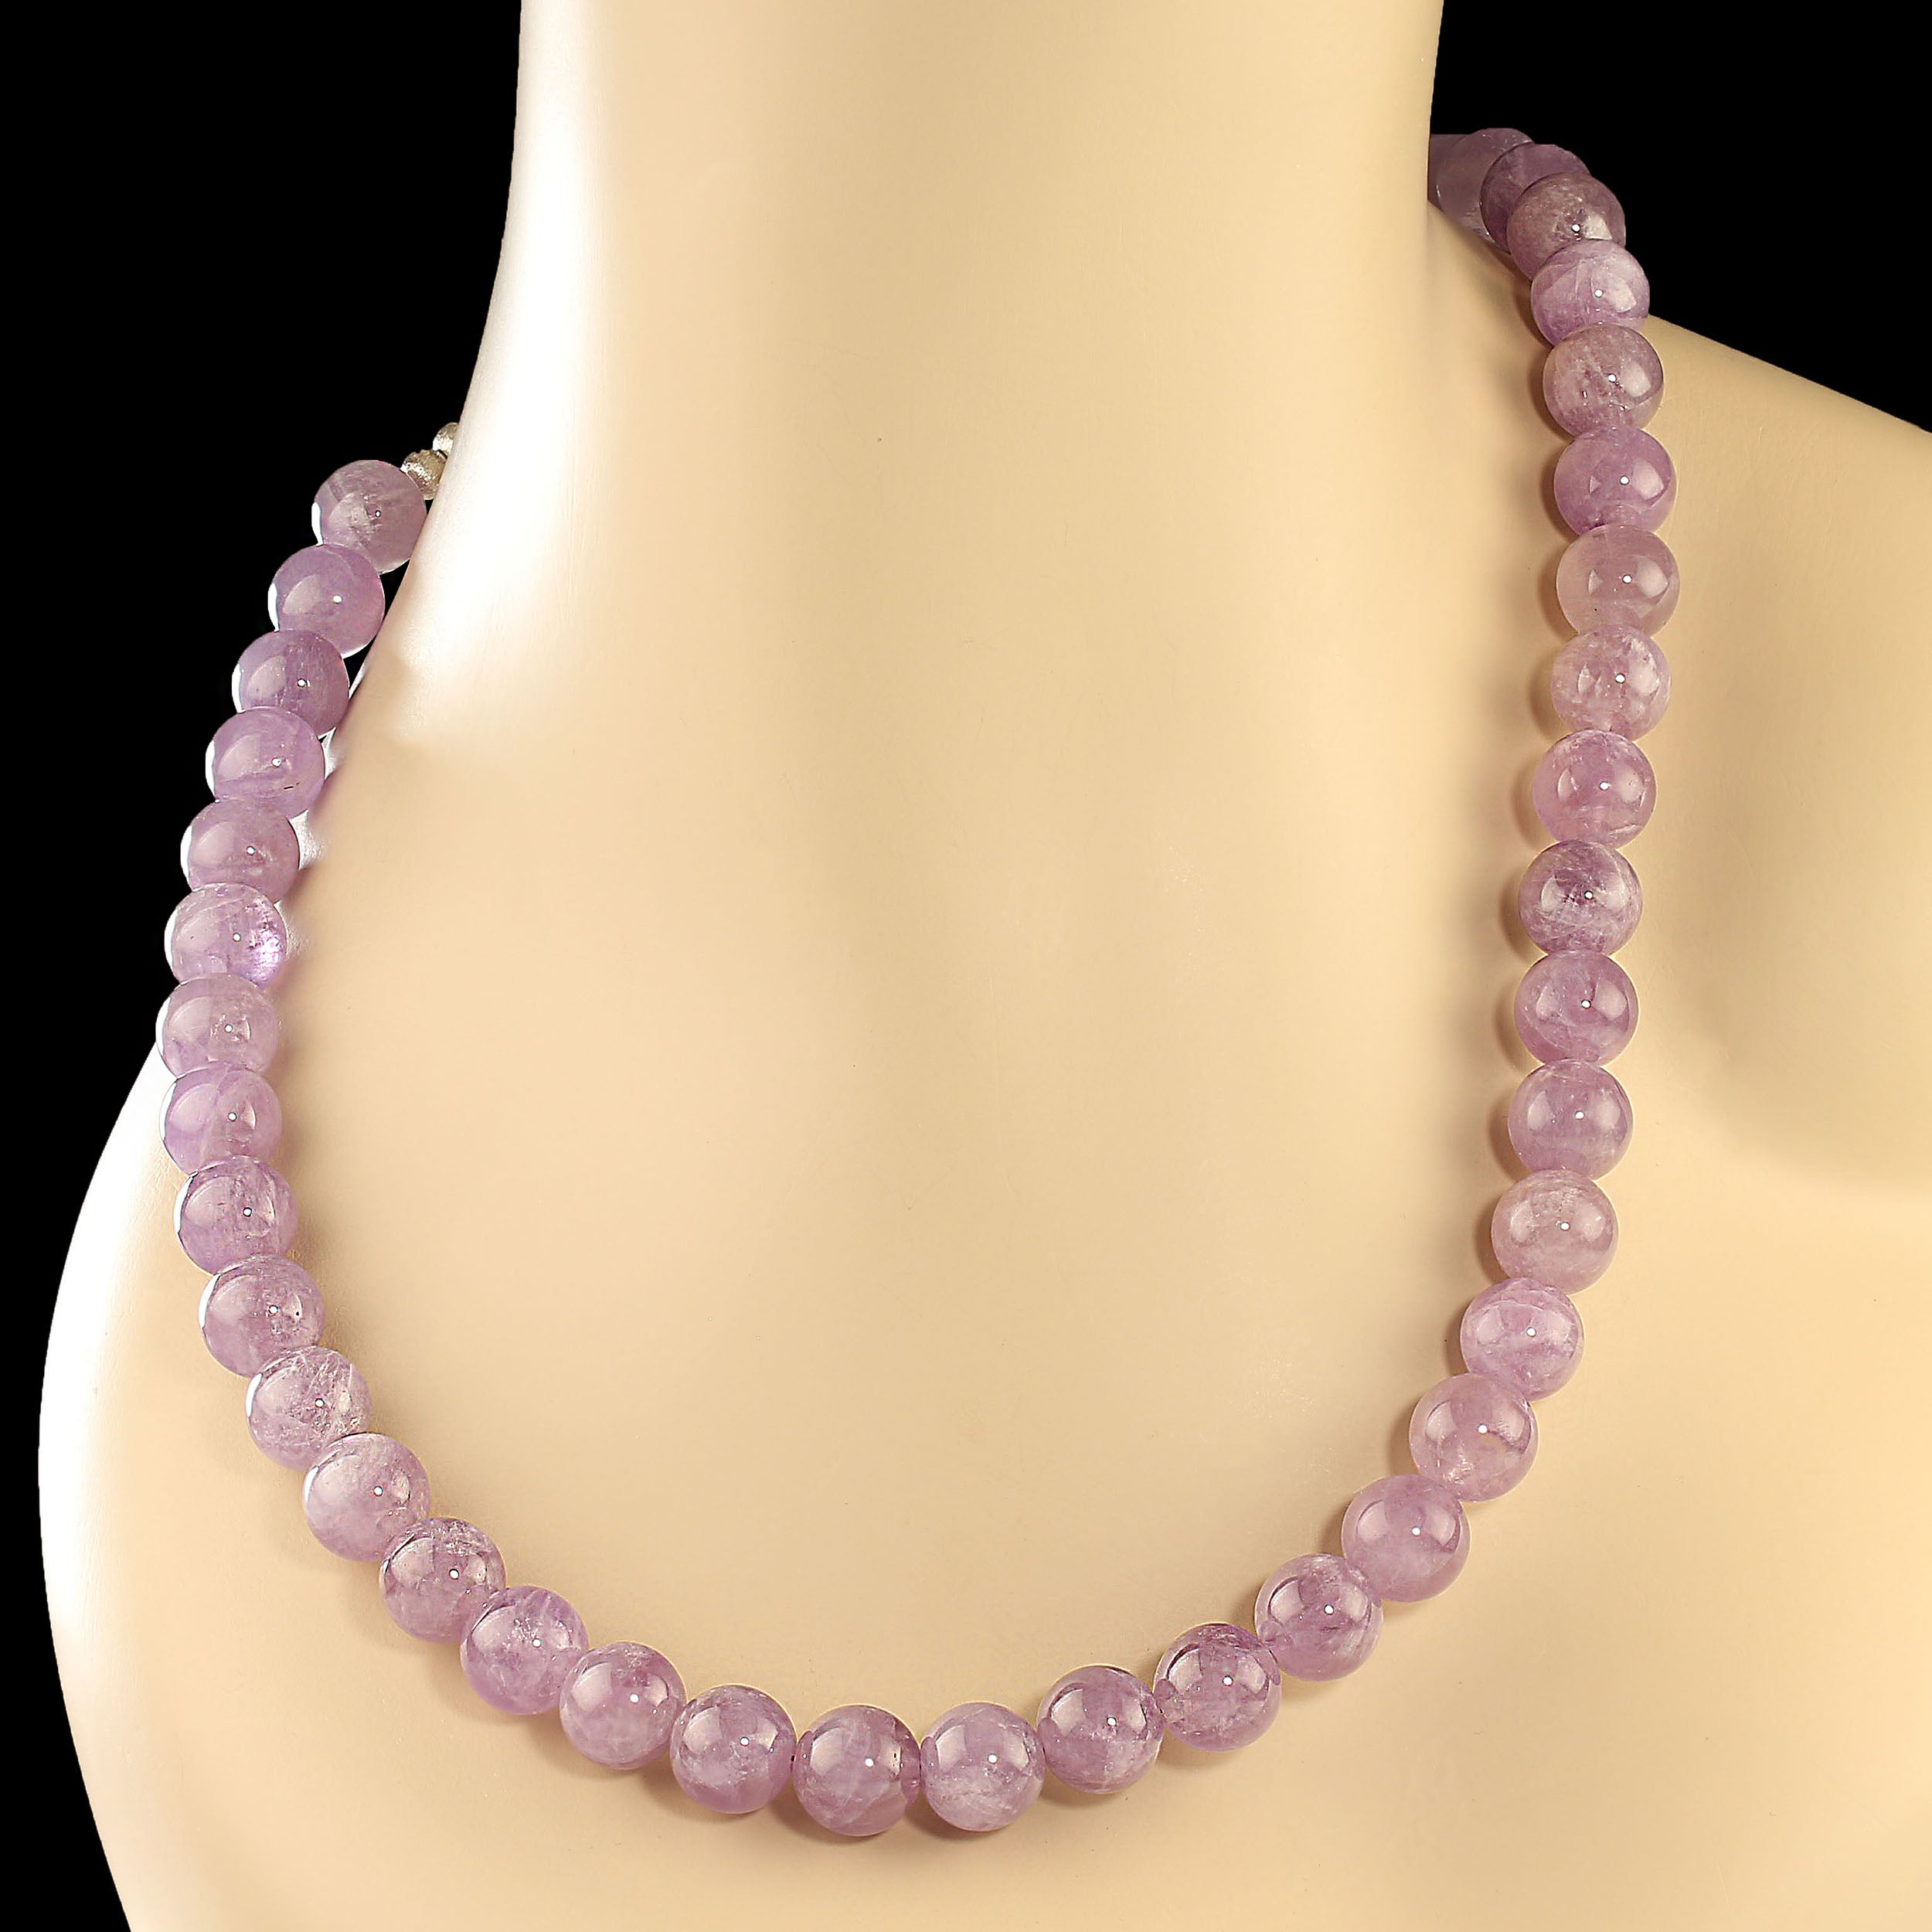 Februar-Geburtsstein!  Was für ein tolles Geschenk für das Februar-Baby.  Diese 25-Zoll-Halskette ist ein leuchtender, lila Amethyst.  Die Halskette besteht aus glatten, hochglanzpolierten 12-mm-Perlen. Er wird mit einem leicht zu verwendenden